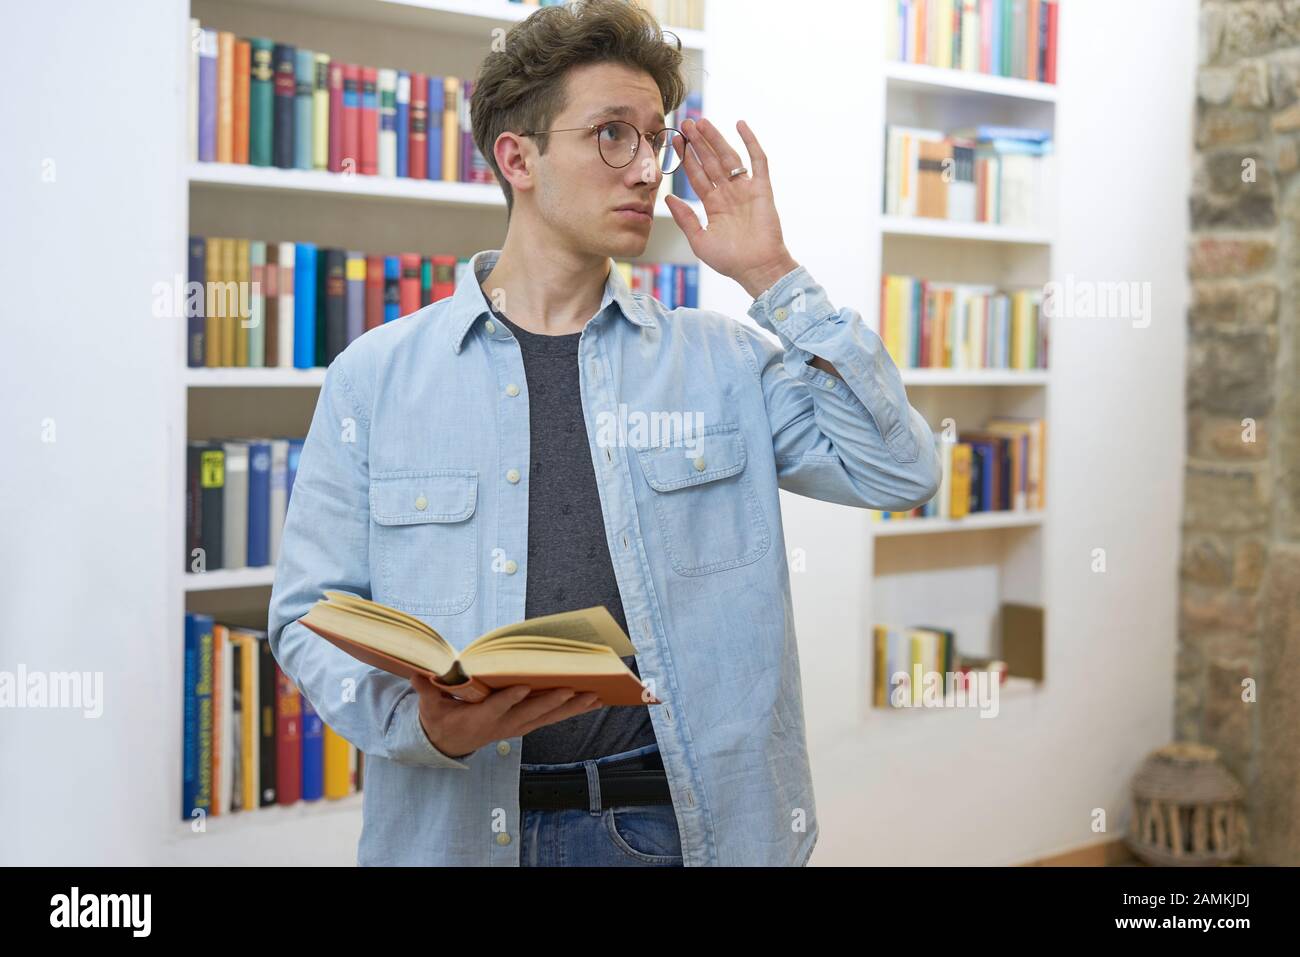 Estudiante joven con libro en su mano de pie delante de una estantería comprobando sus gafas y mirando hacia arriba. Foto de stock